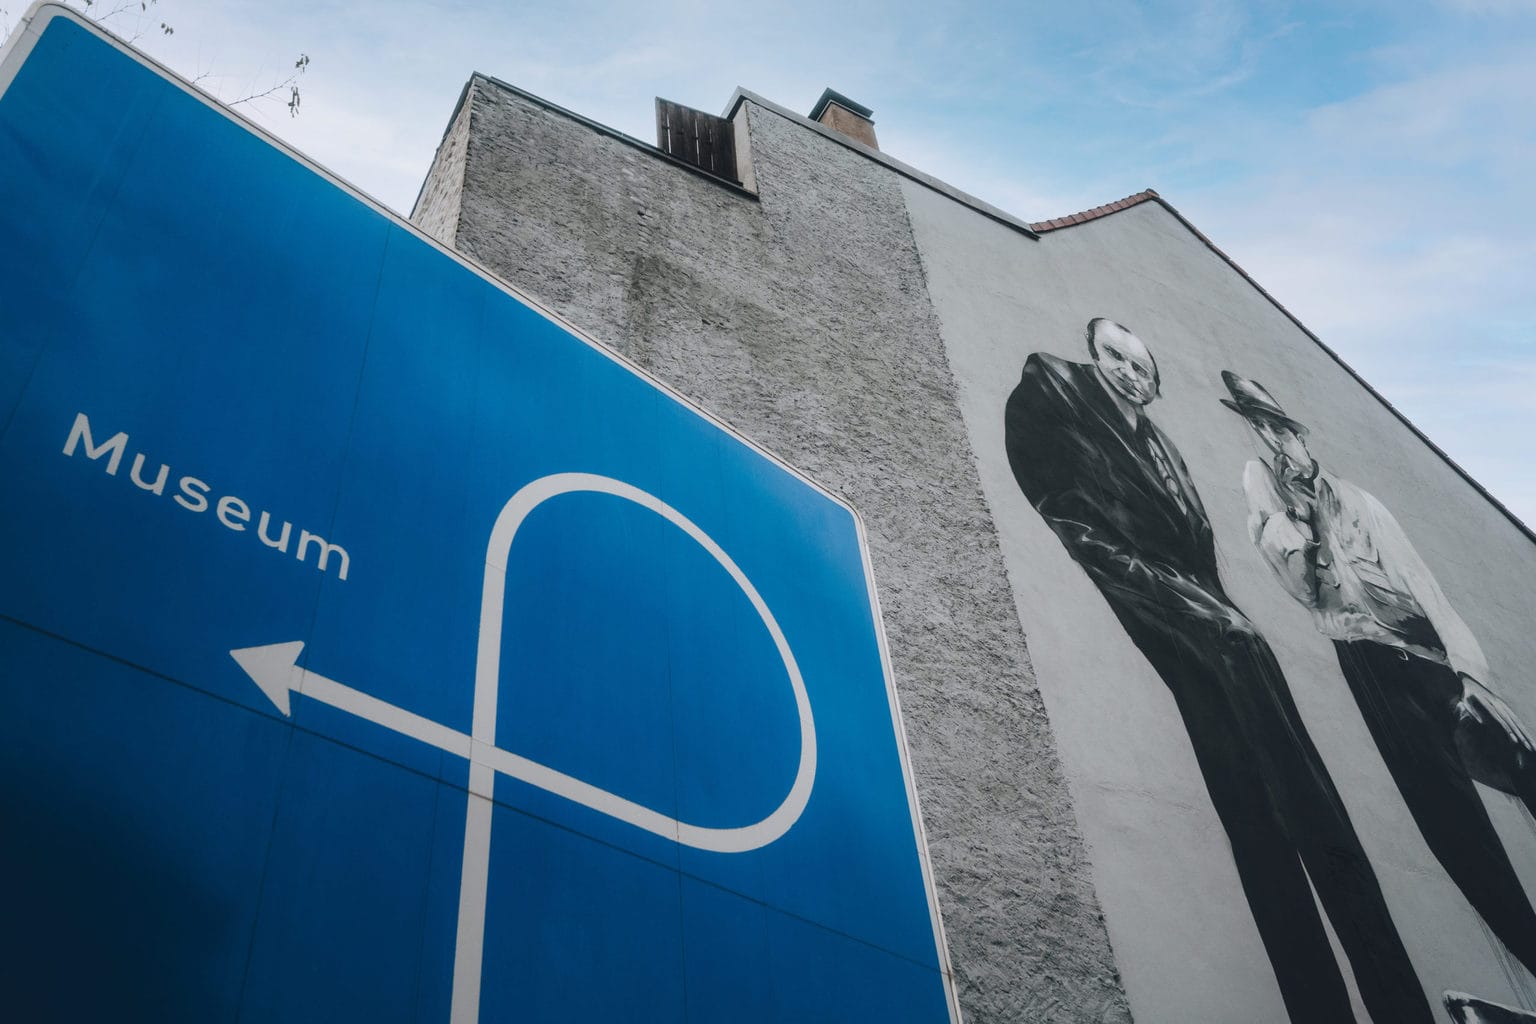 Graffiti met kunstenaar Joseph Beuys en een bord dat wijst naar de ingang van een museum in Mönchengladbach